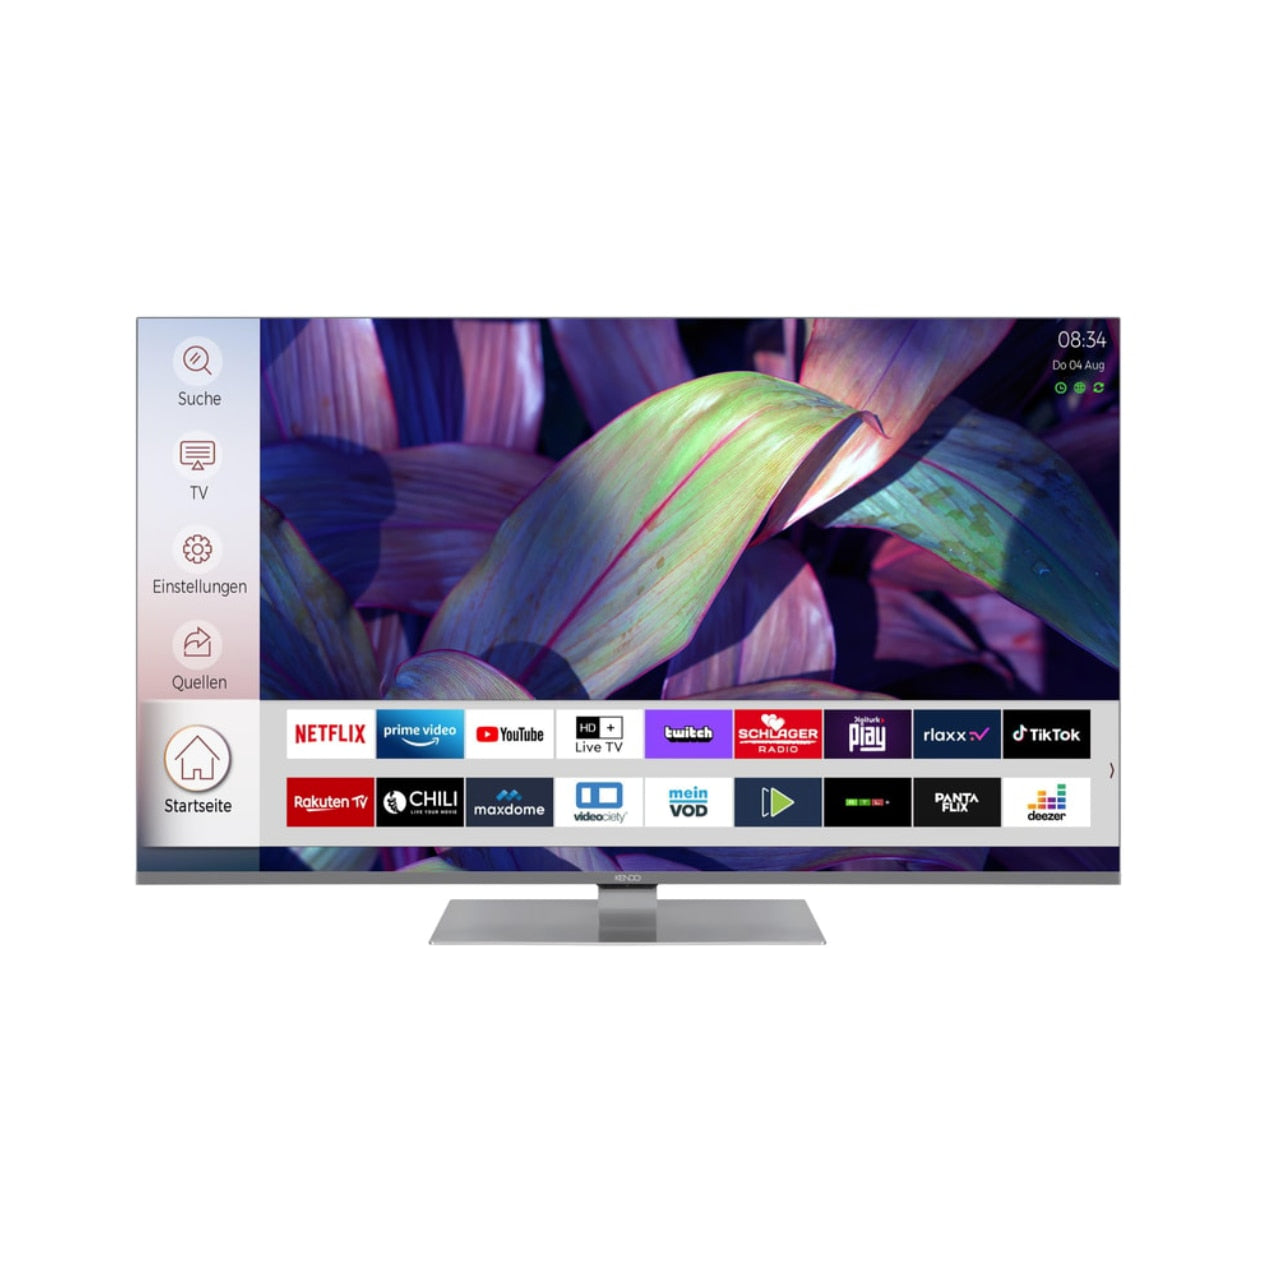 Televizor QLED KENDO 9231 TS, Smart TV 4K UHD, HDR, control vocal, 164 cm, Argintiu